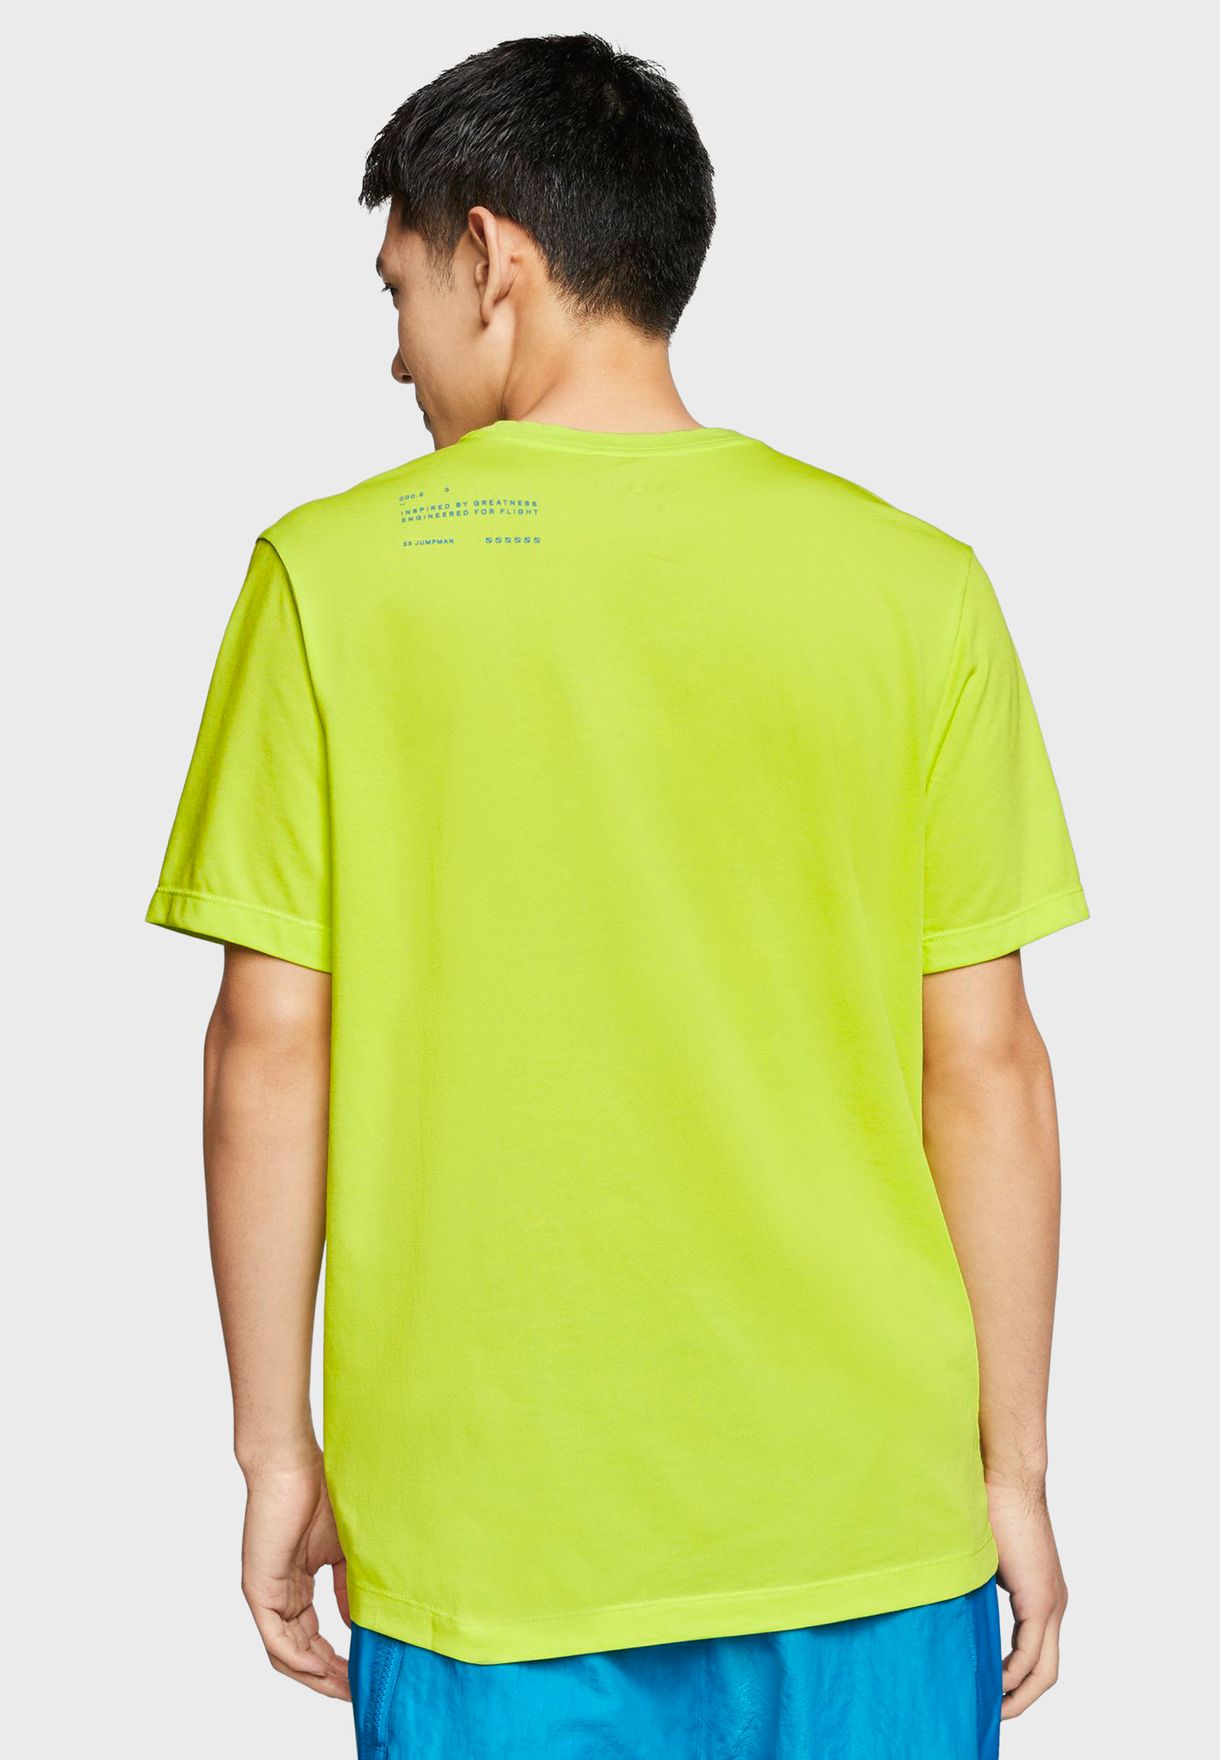 green and yellow jordan shirt